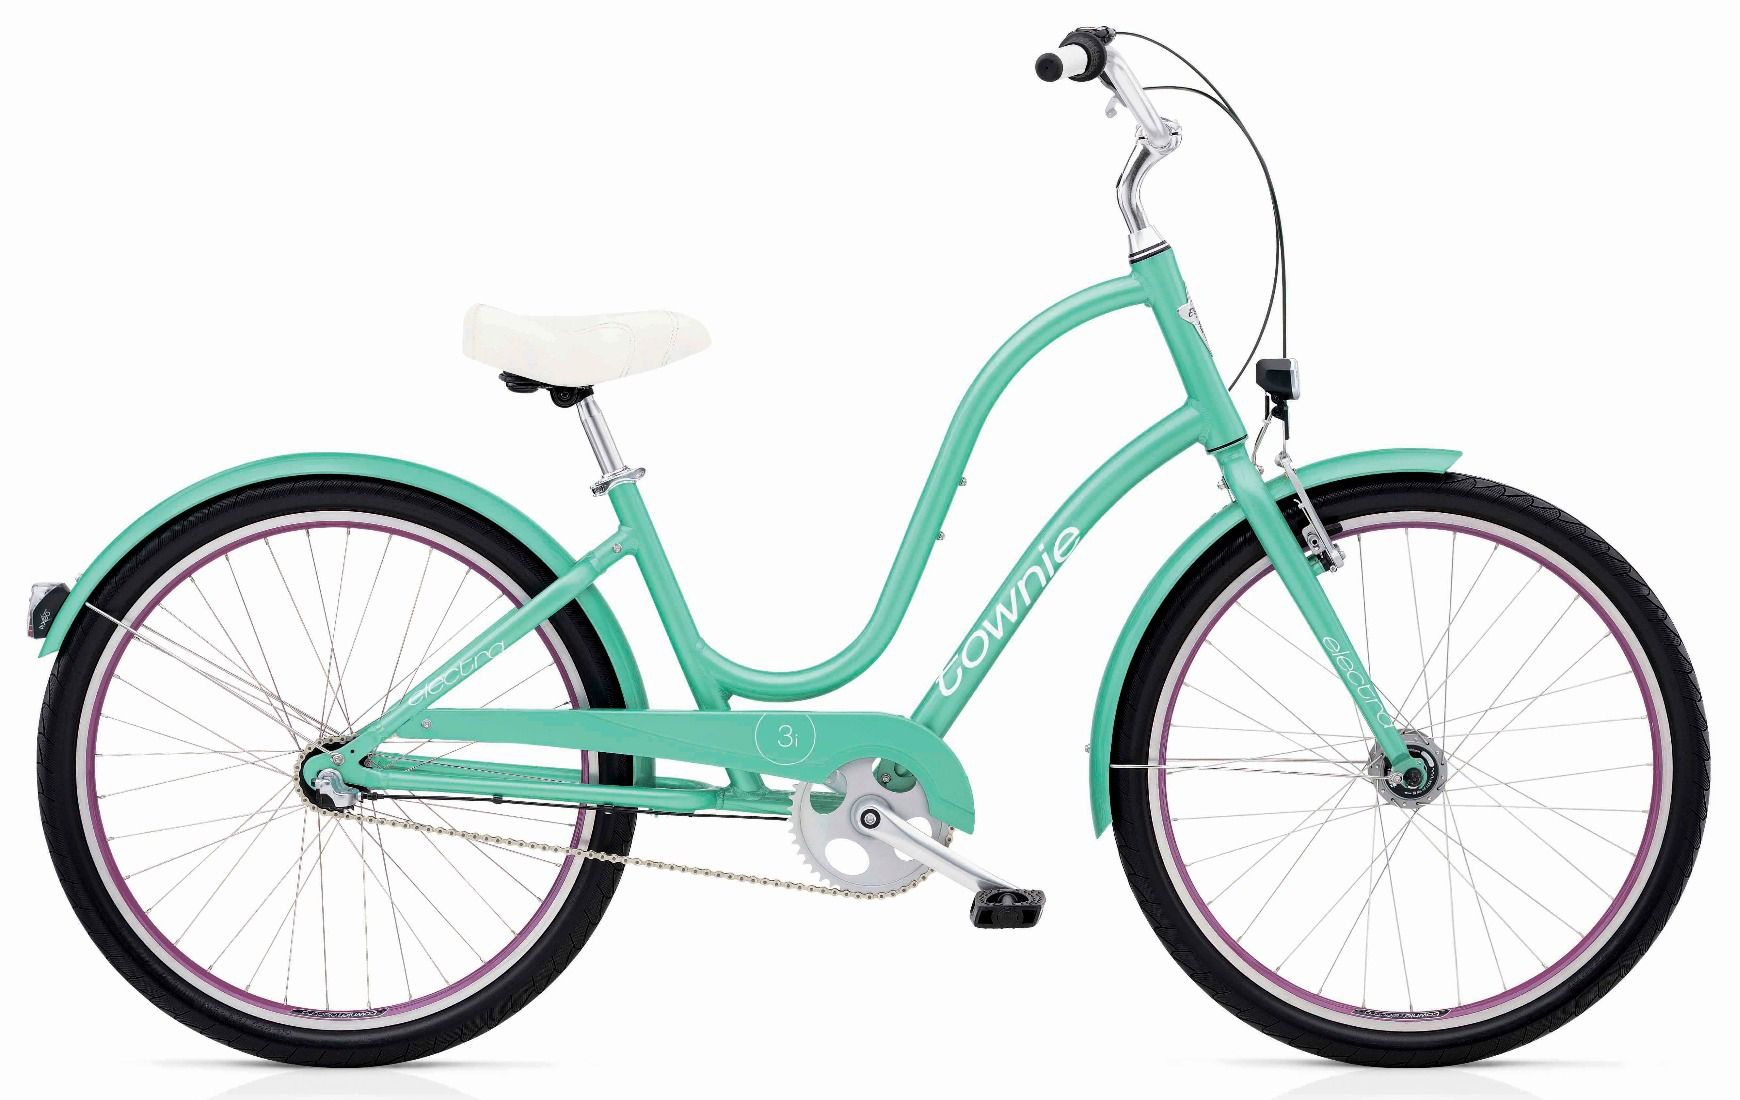  Велосипед Electra Townie Original 3i EQ 2019